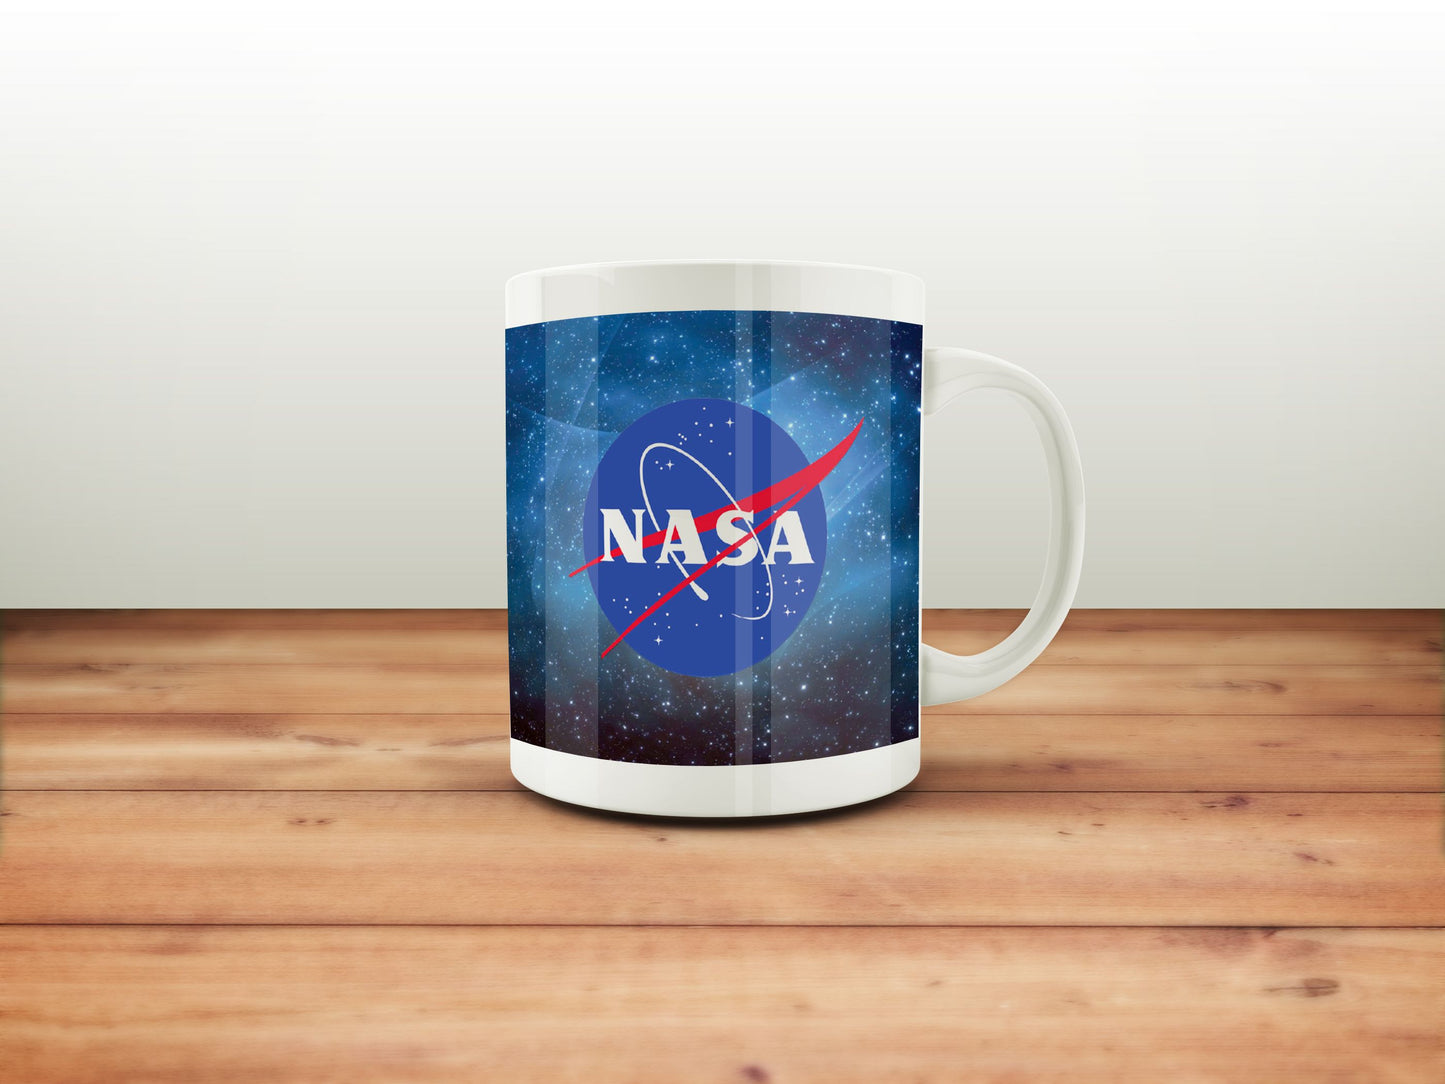 Mug NASA - Nasa in the Space